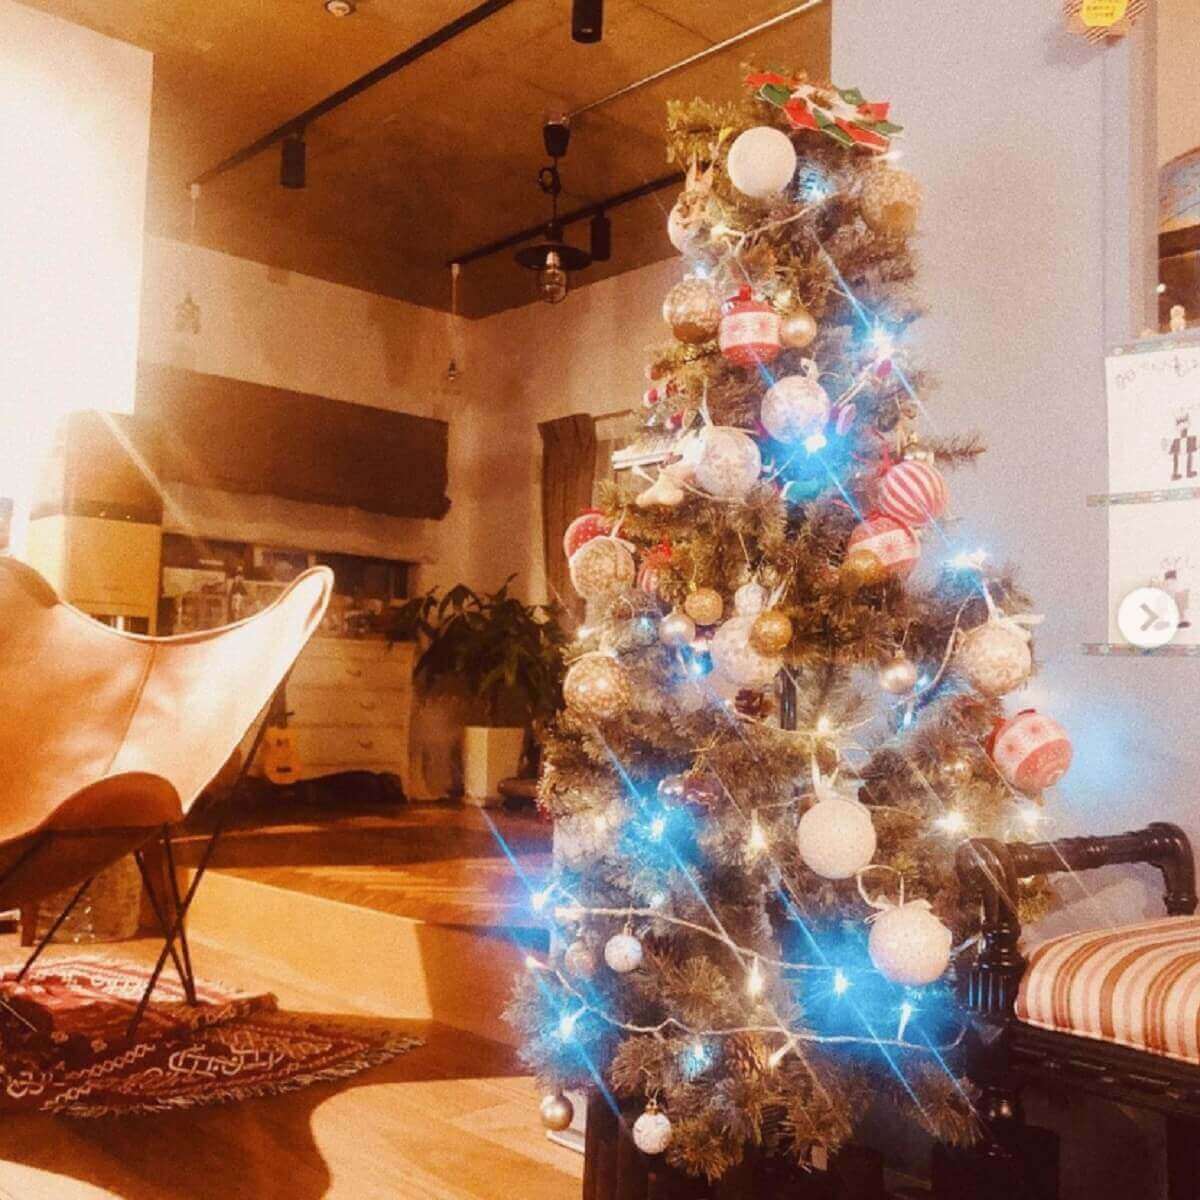 スザンヌ、クリスマスツリーの完成度の高さに驚きの声「庶民とはレベルが違う」